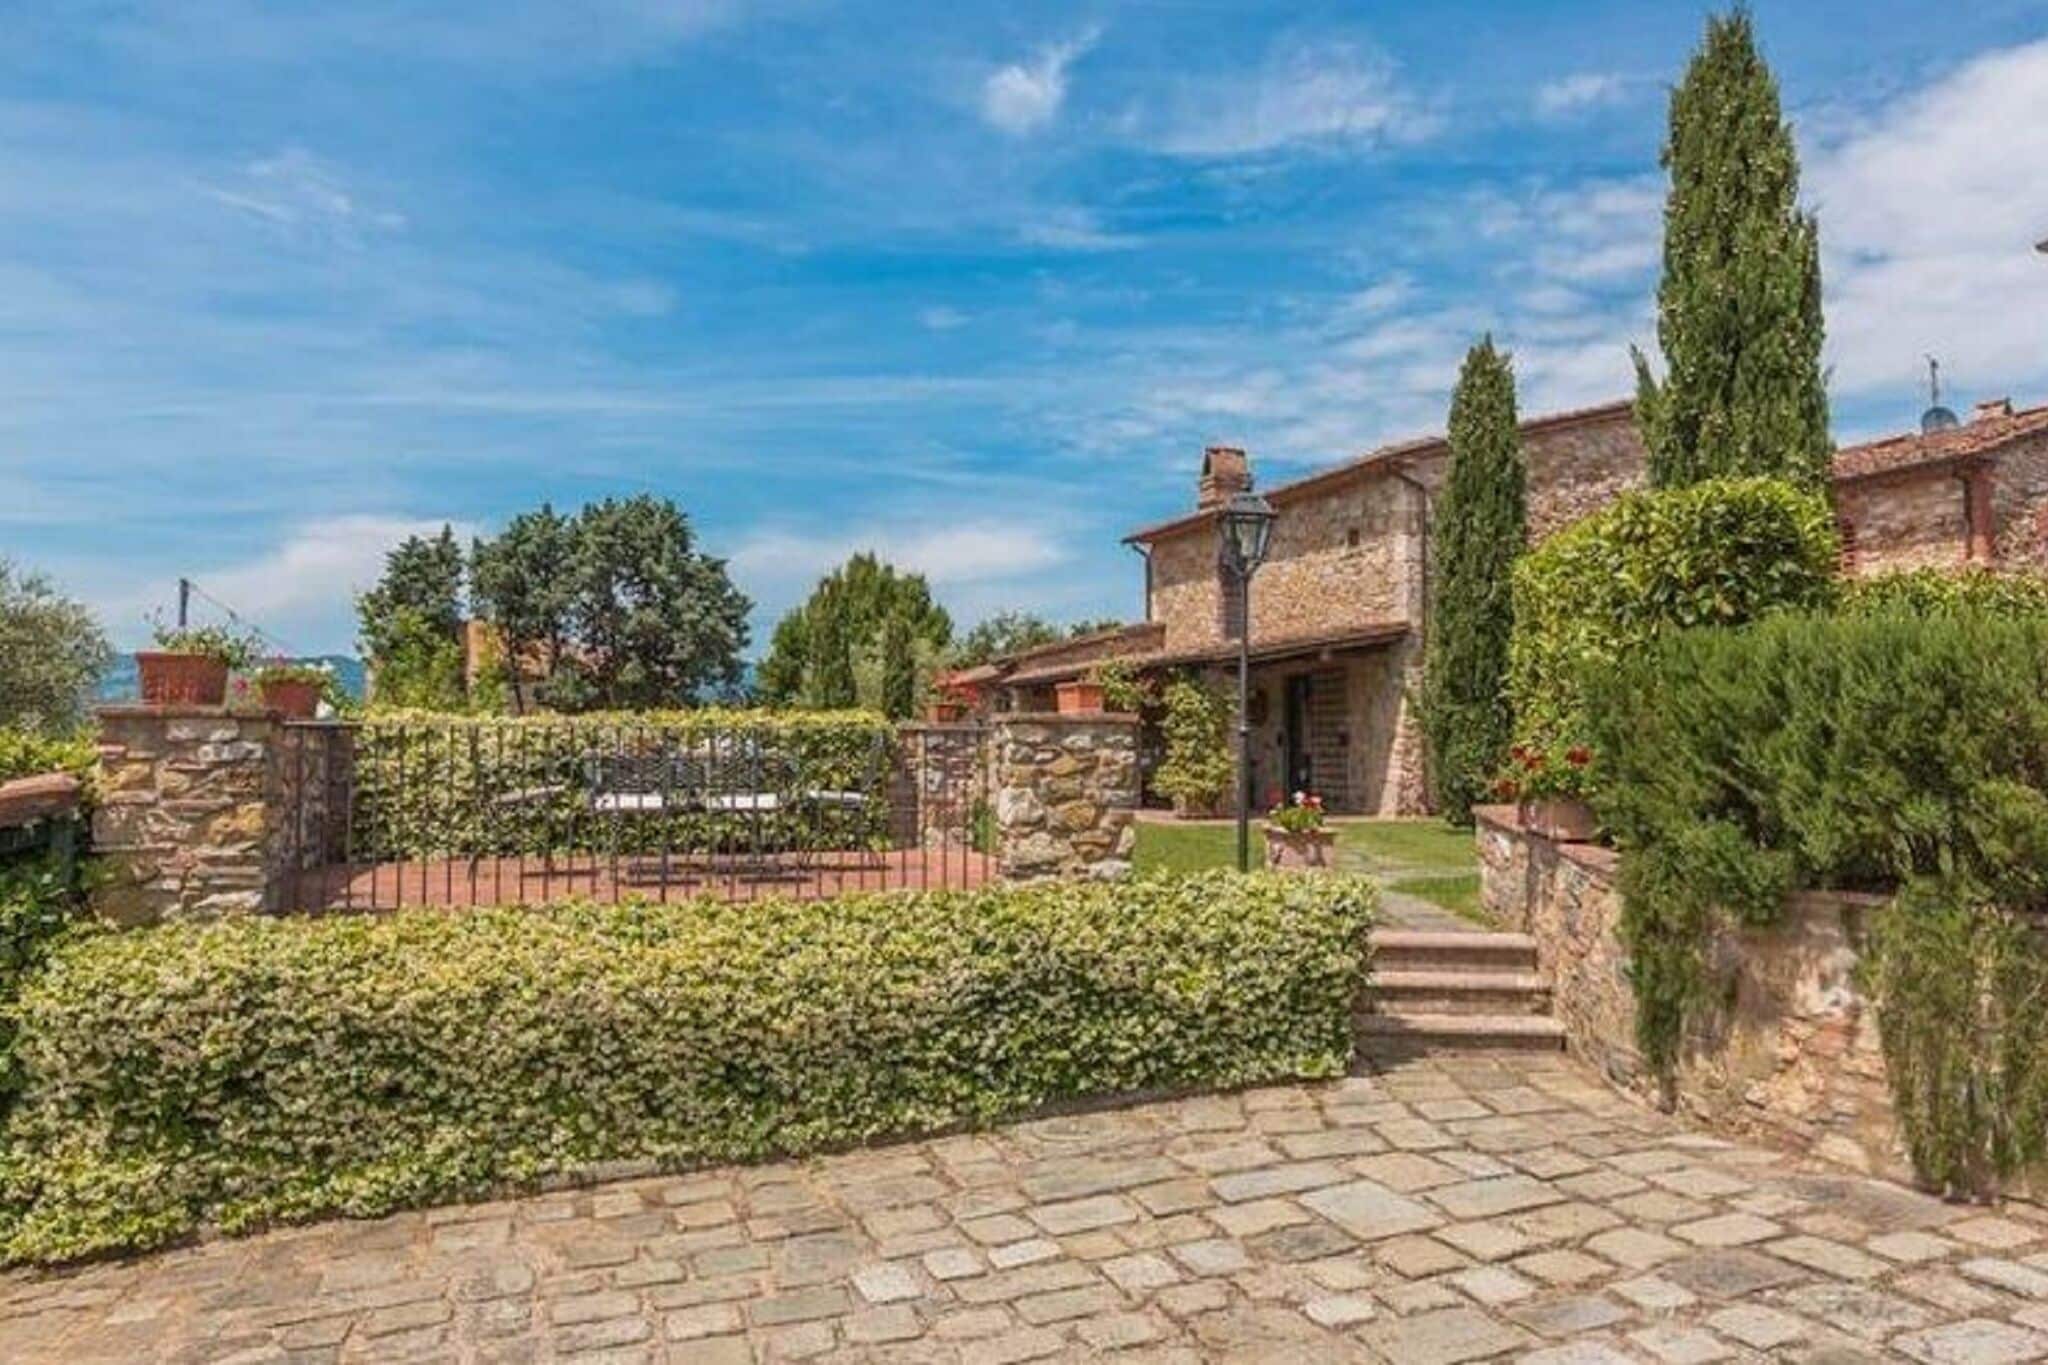 Fijn vakantiehuis in Monsummano Terme met tuin